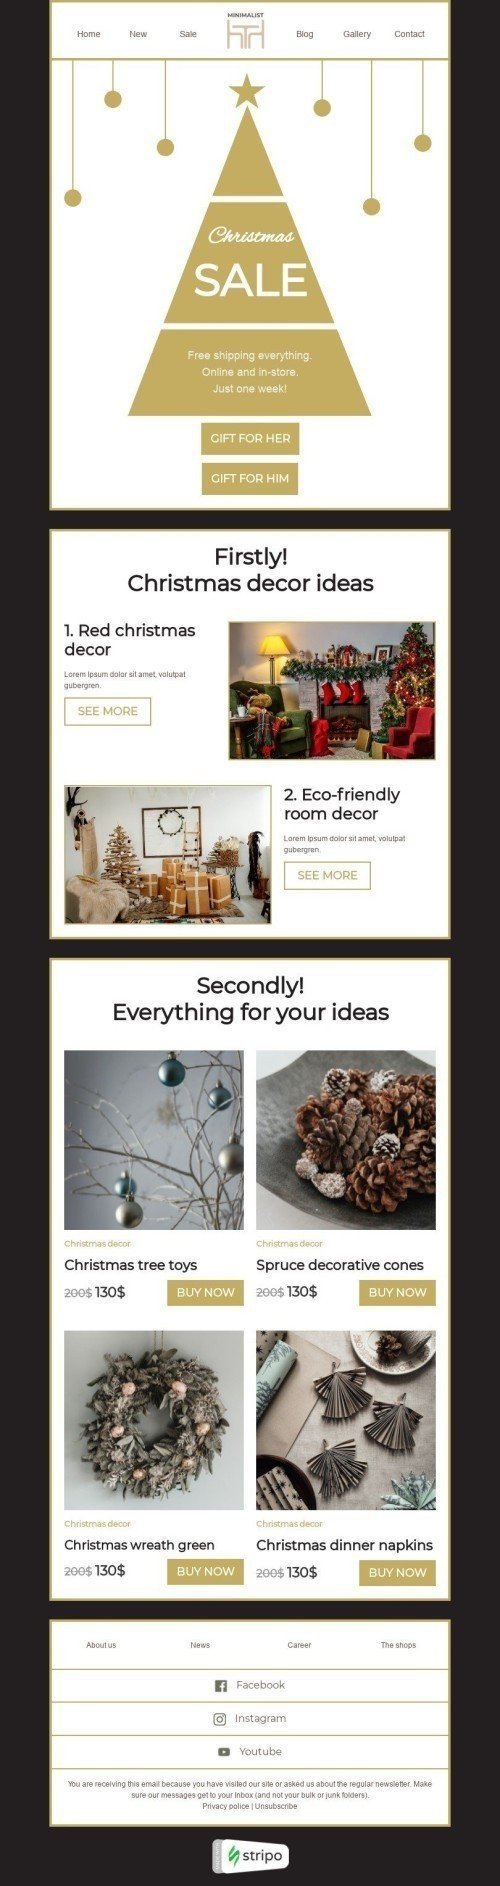 Plantilla de correo electrónico «Ideas de decoración navideña» de Navidad para la industria de Muebles, interior y bricolaje mobile view